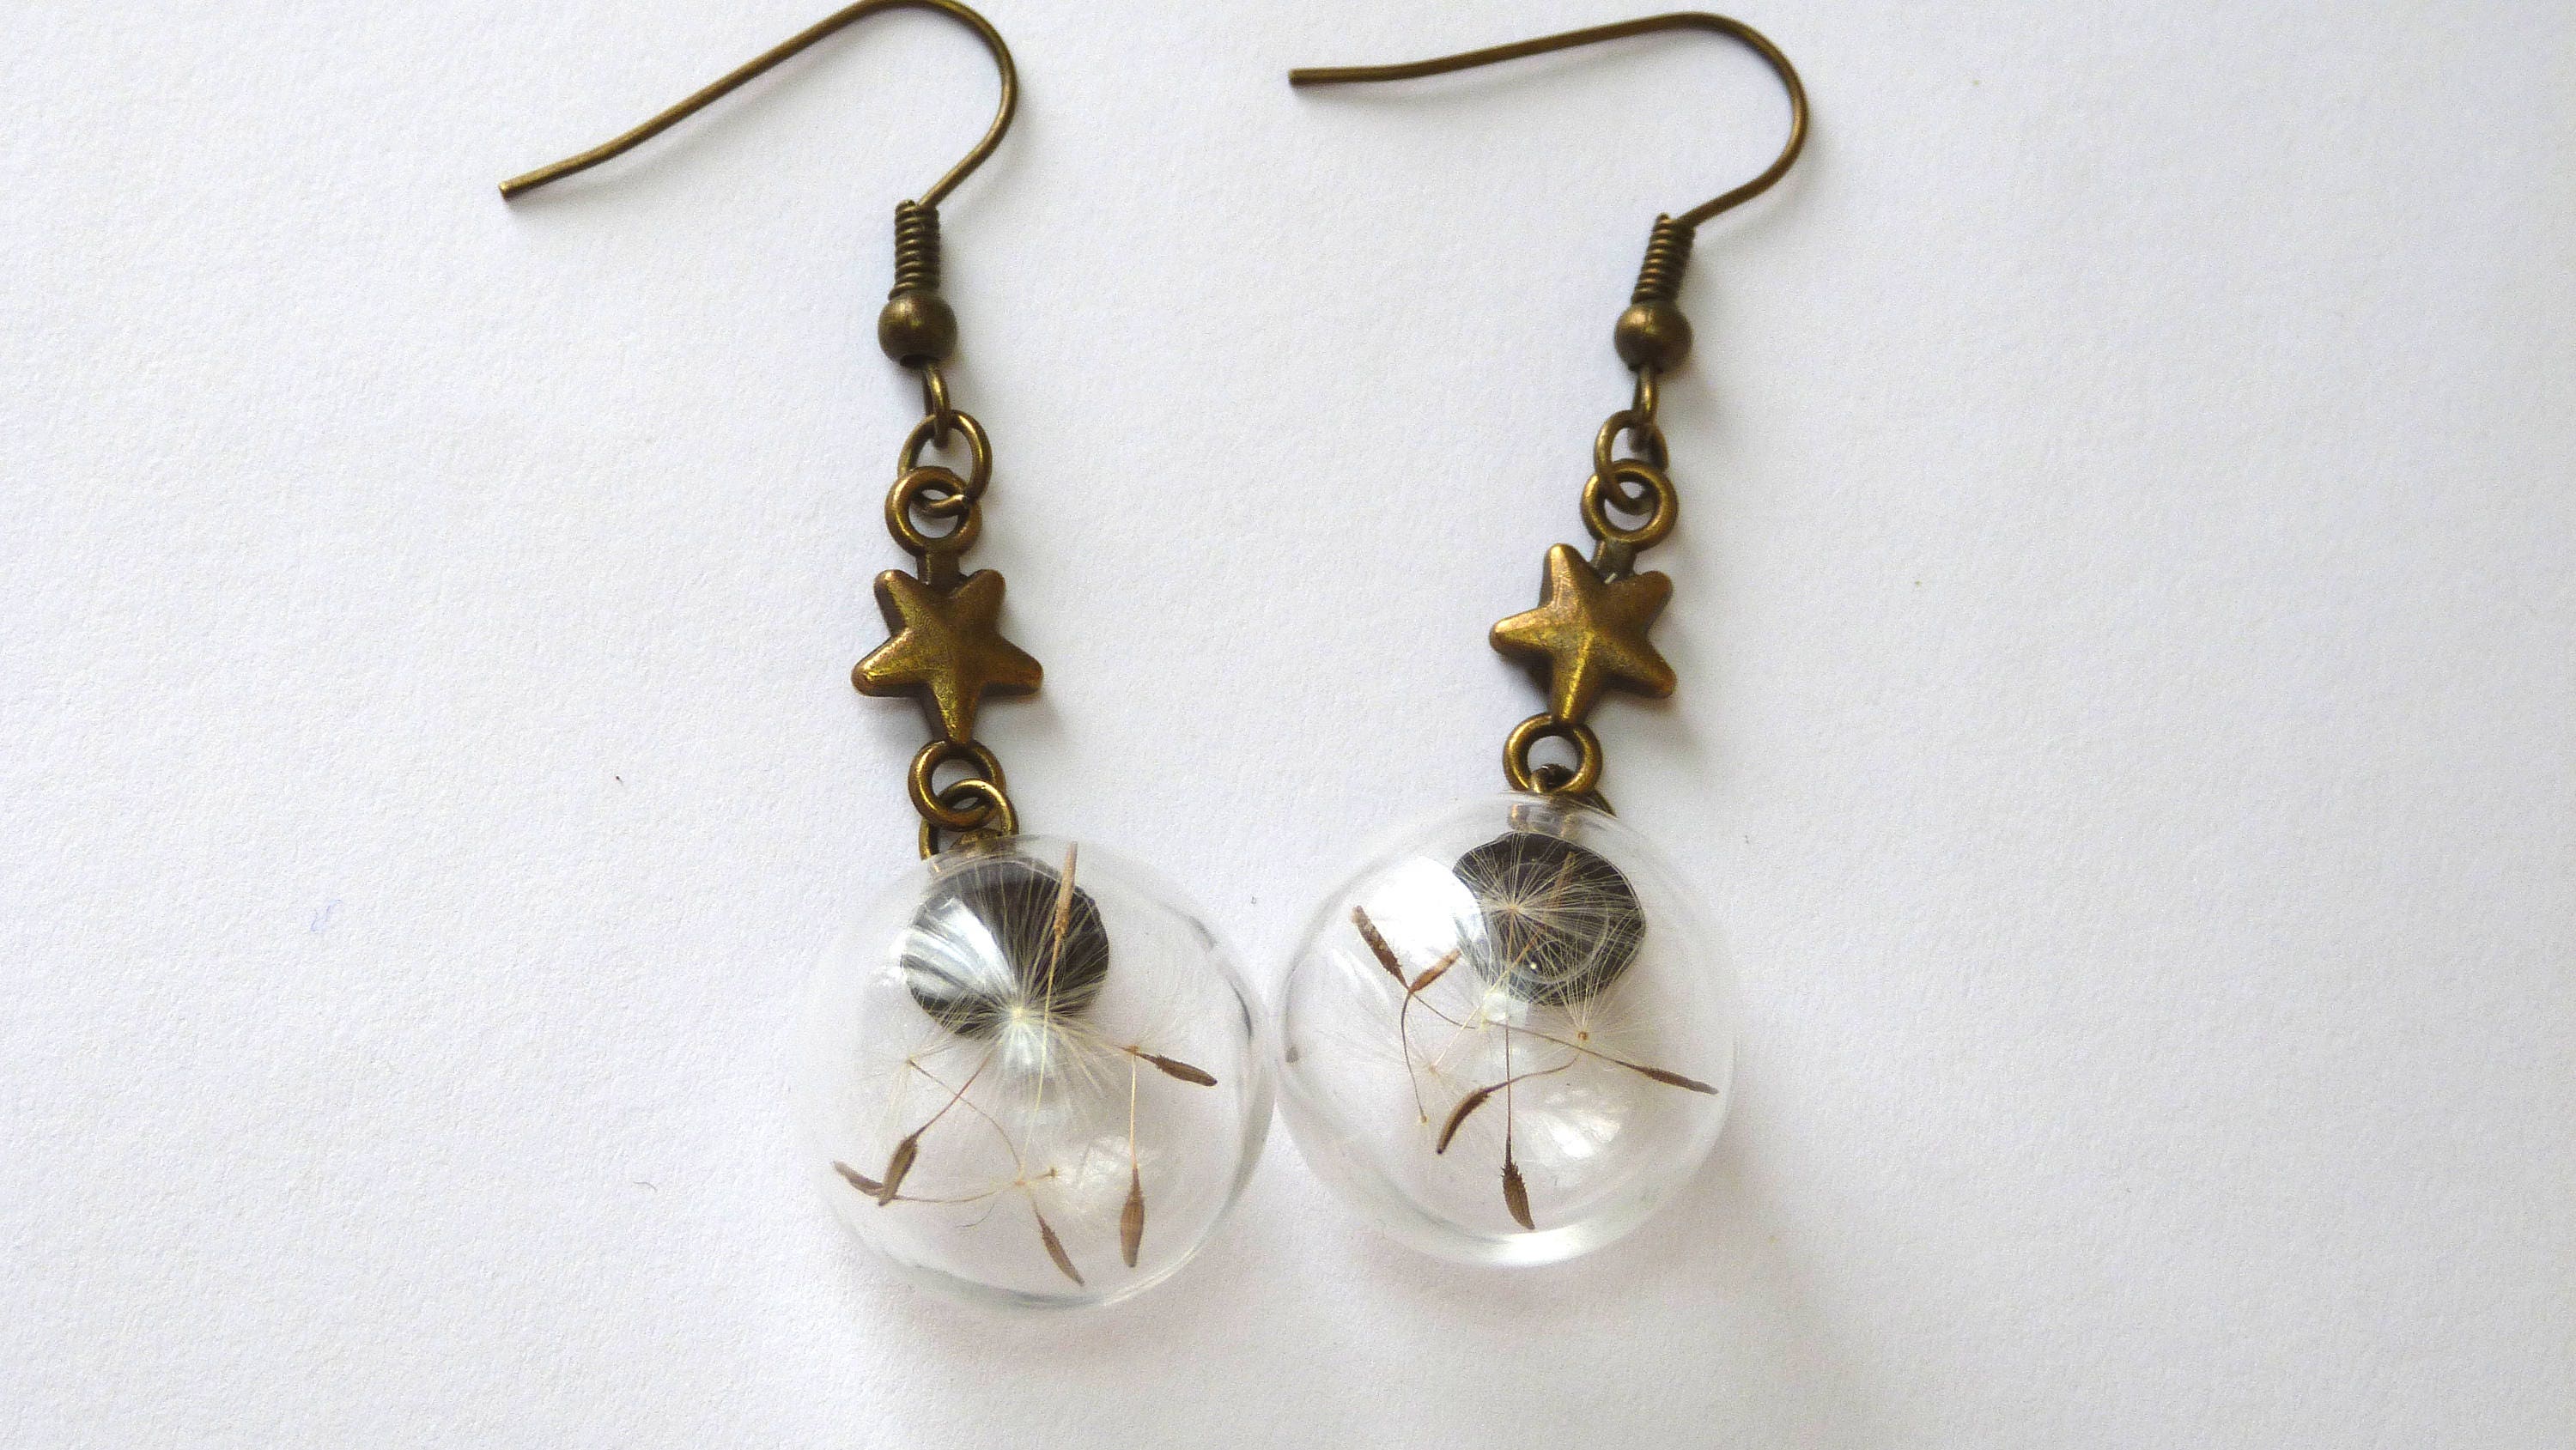 Dandelion earringsreal dandelionsbronze/silver earringsreal | Etsy